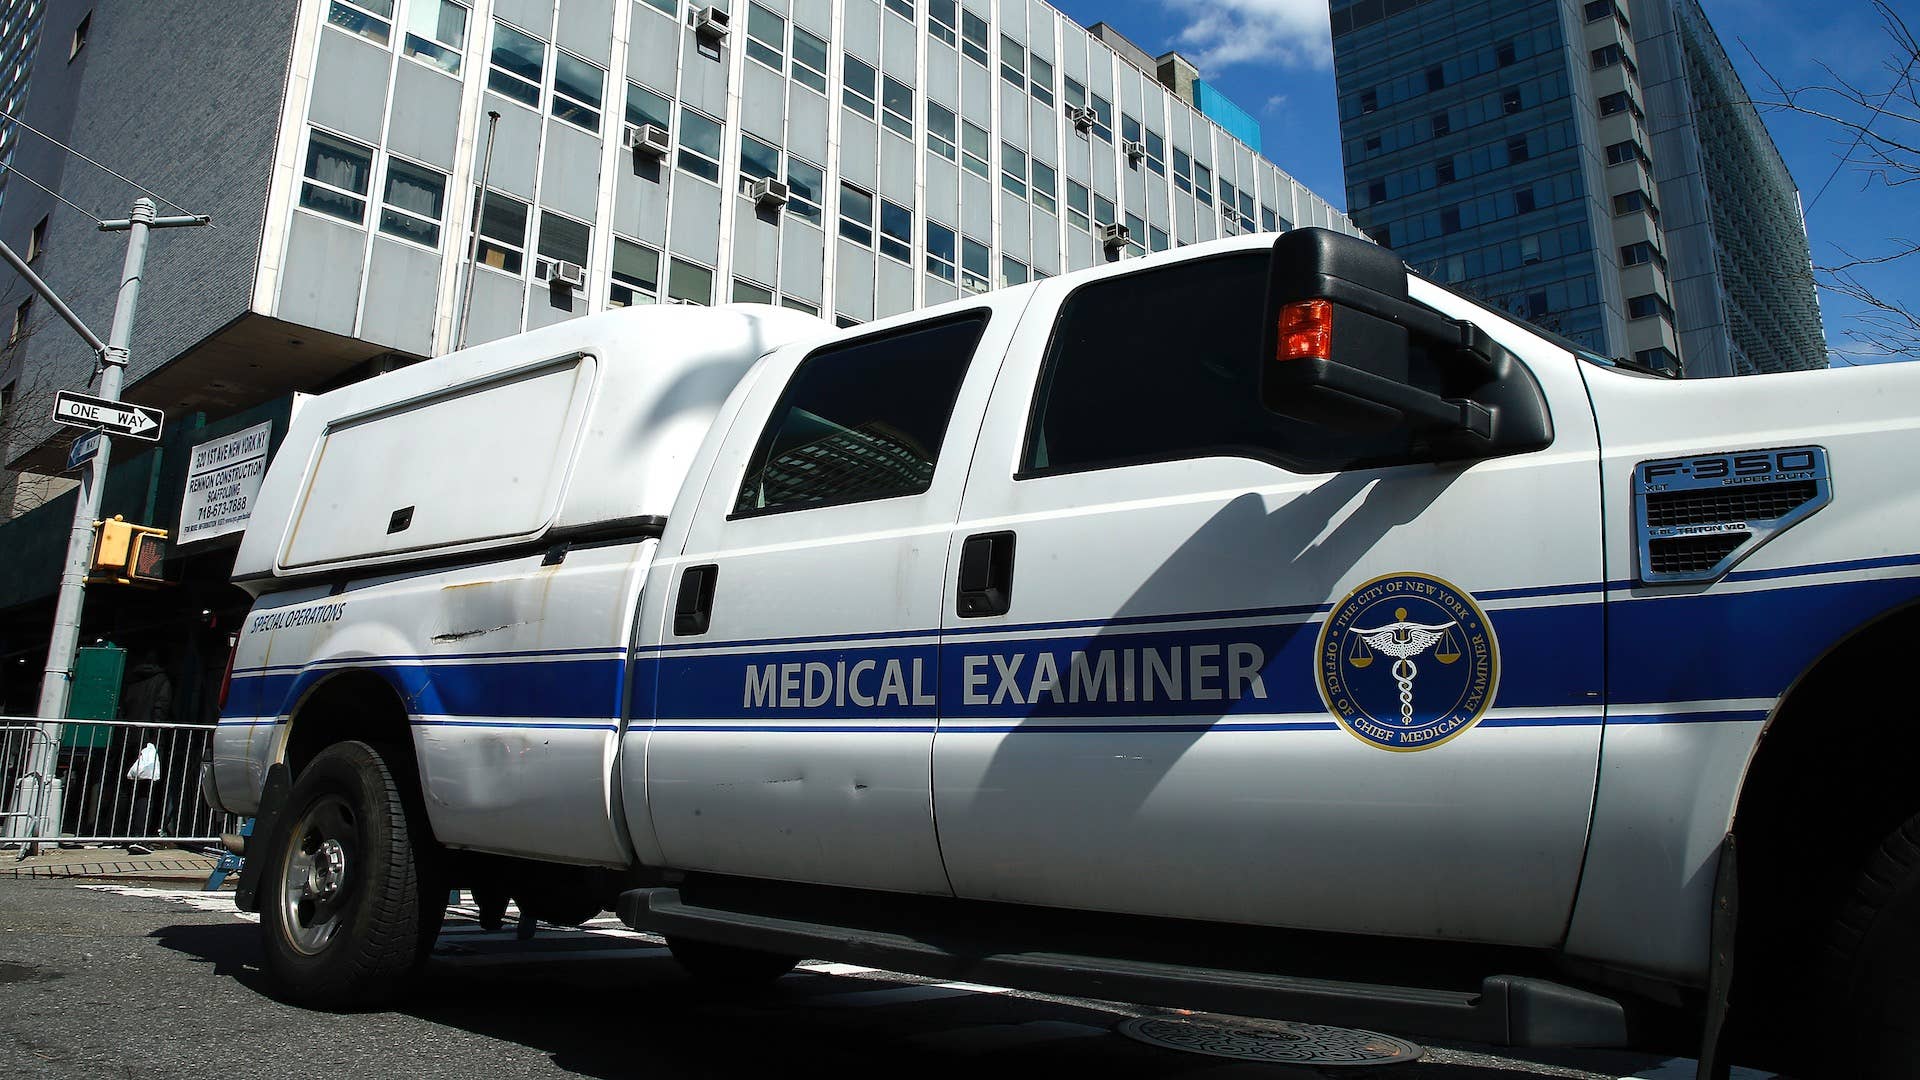 Medical Examiner NYC